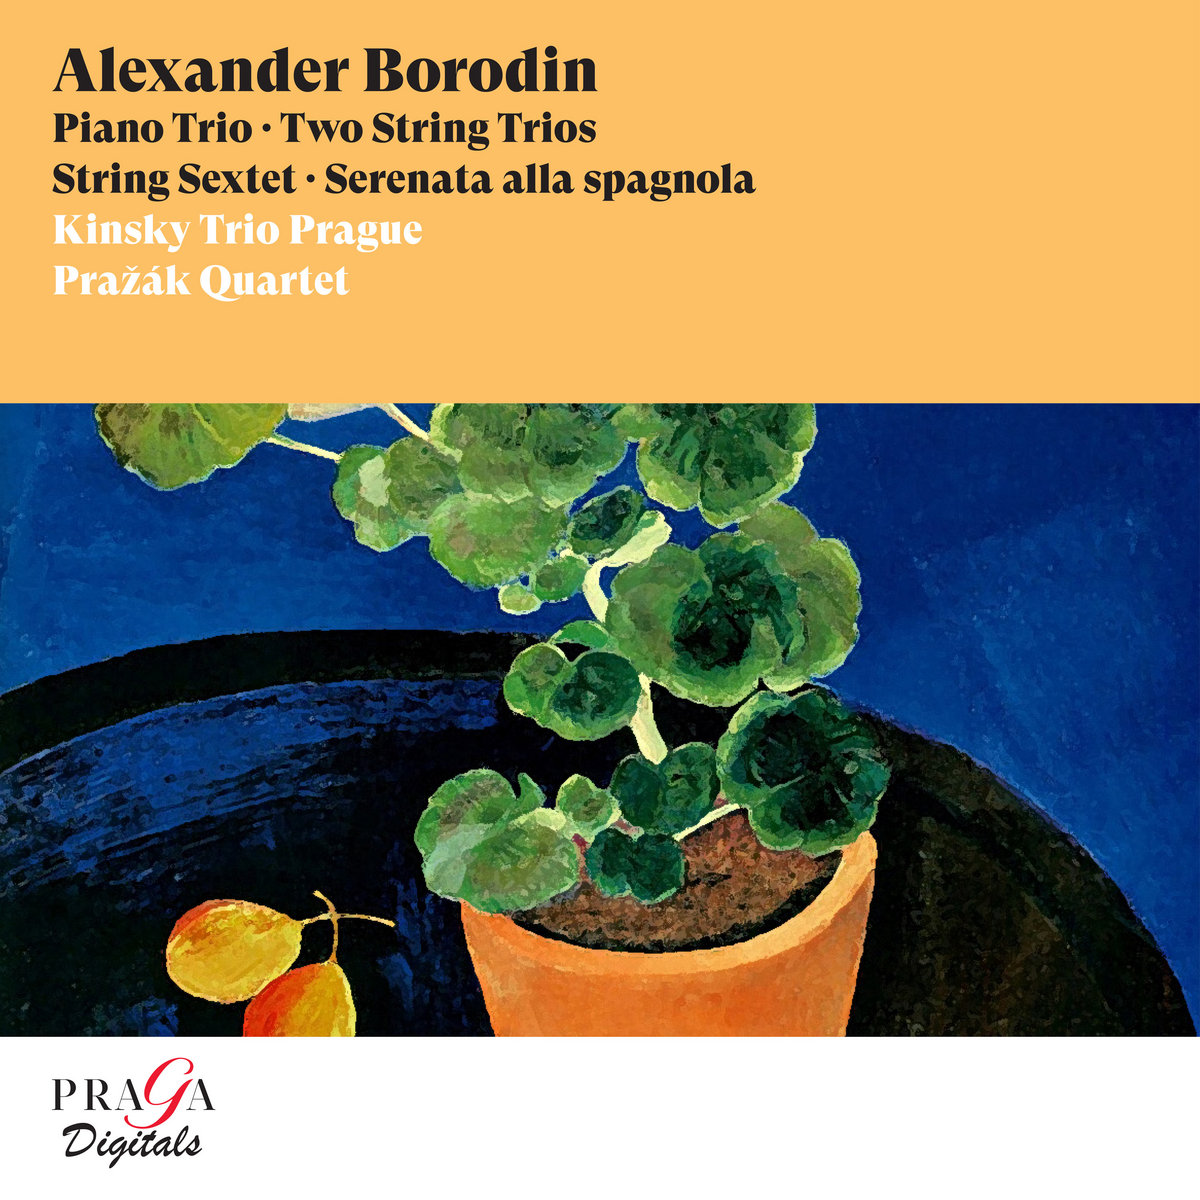 Alexander Borodin: Piano Trio, String Sextet, Two String Trios ...